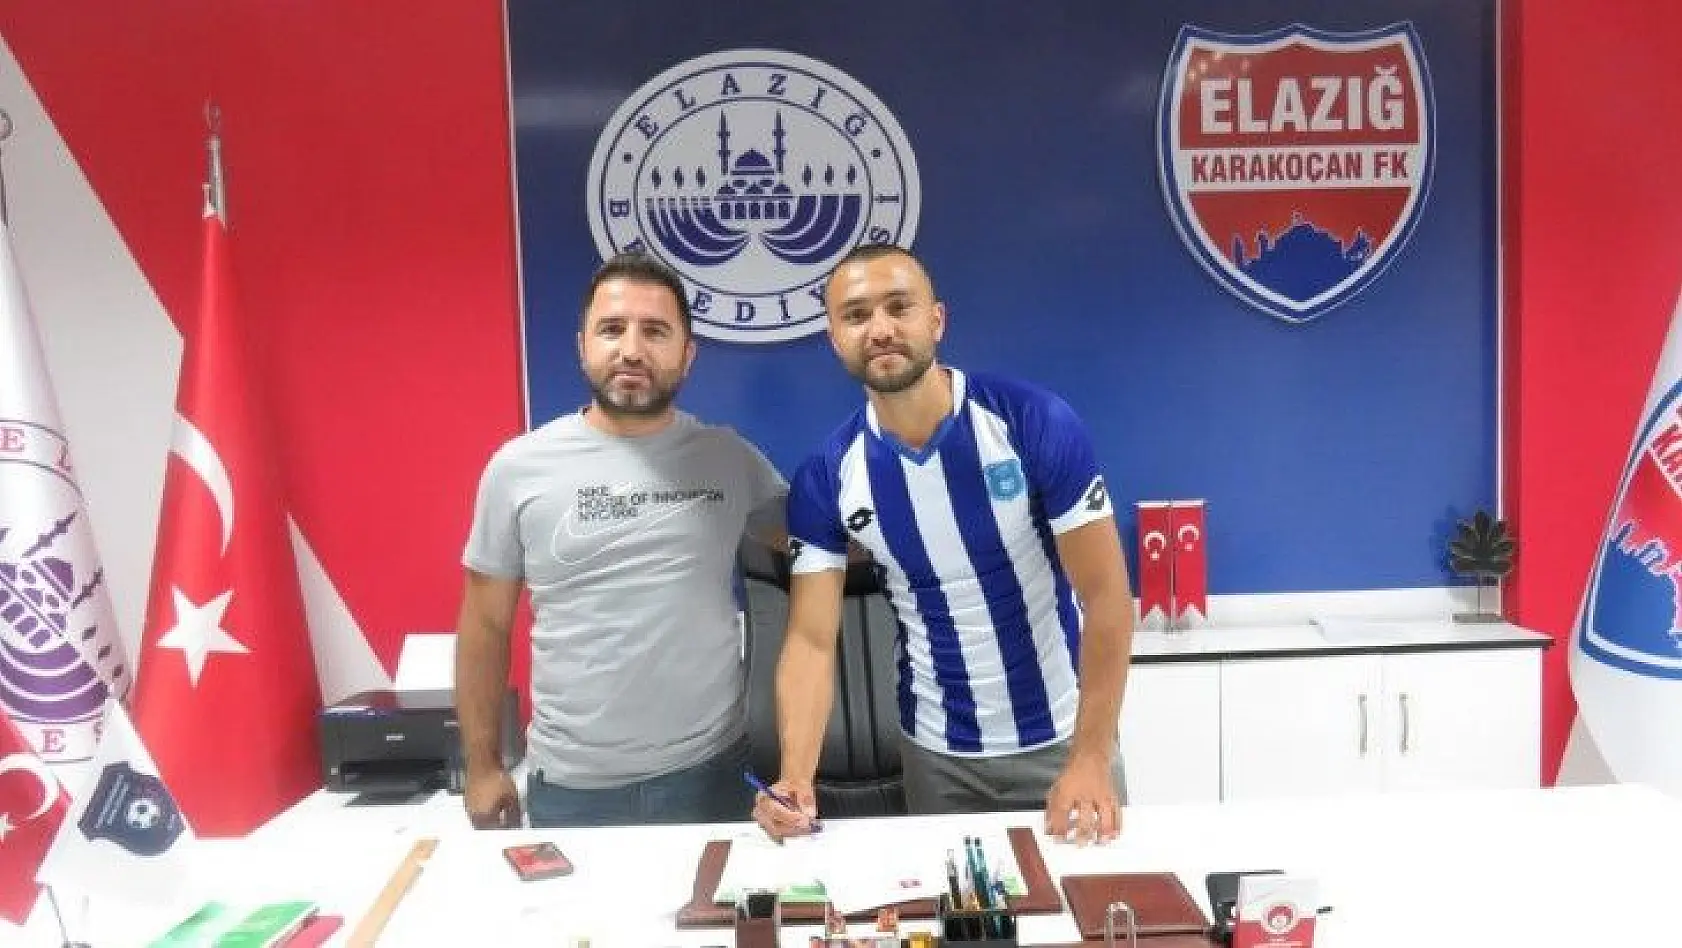 Elazığ Karakoçan FK'dan 8. transfer